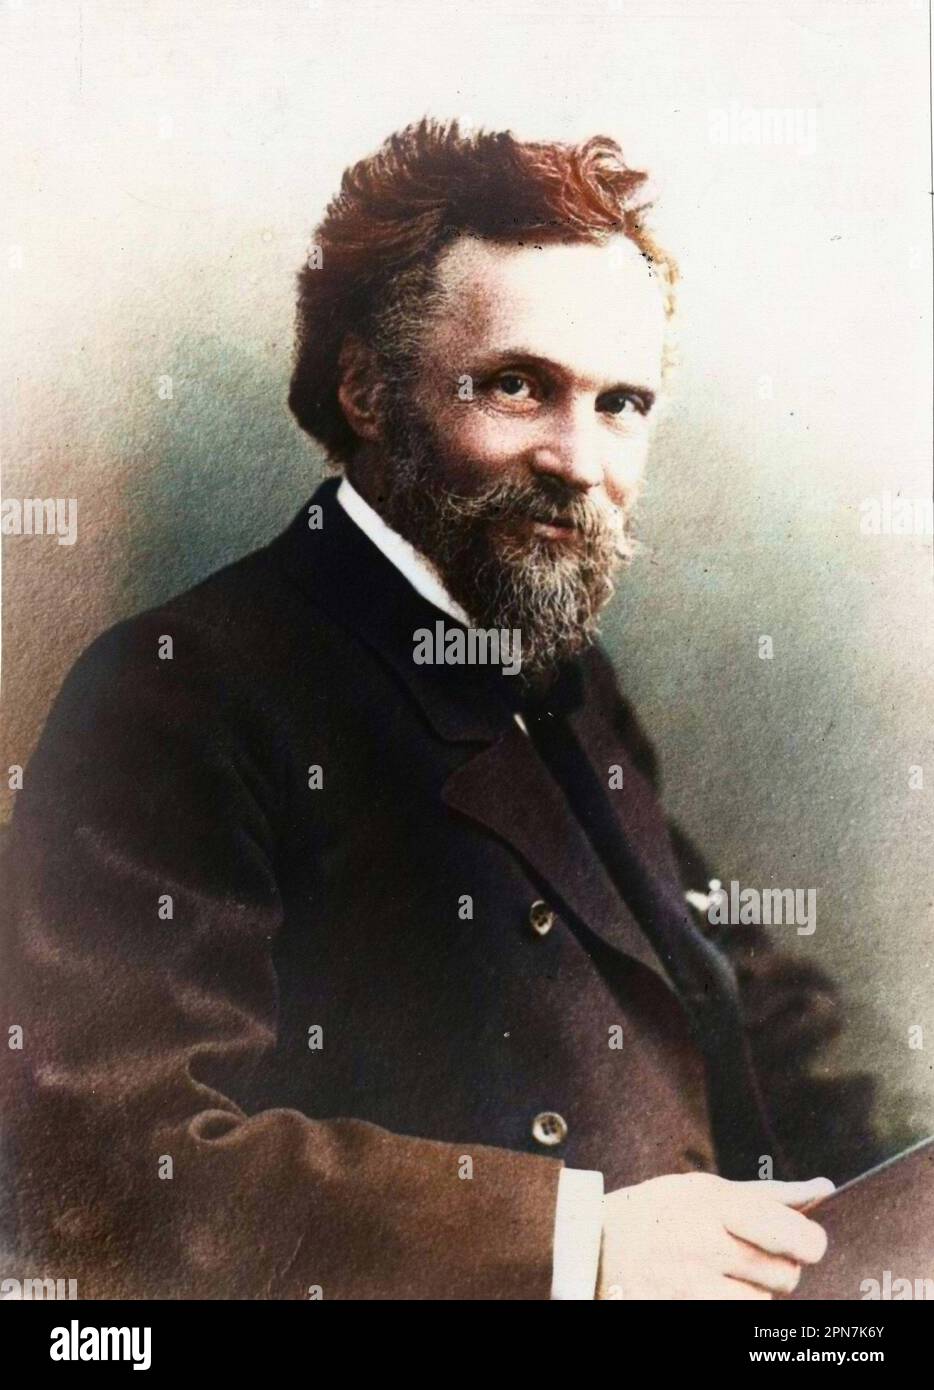 Ceraski Witold (1849-1925). Astronome polonais. Stock Photo